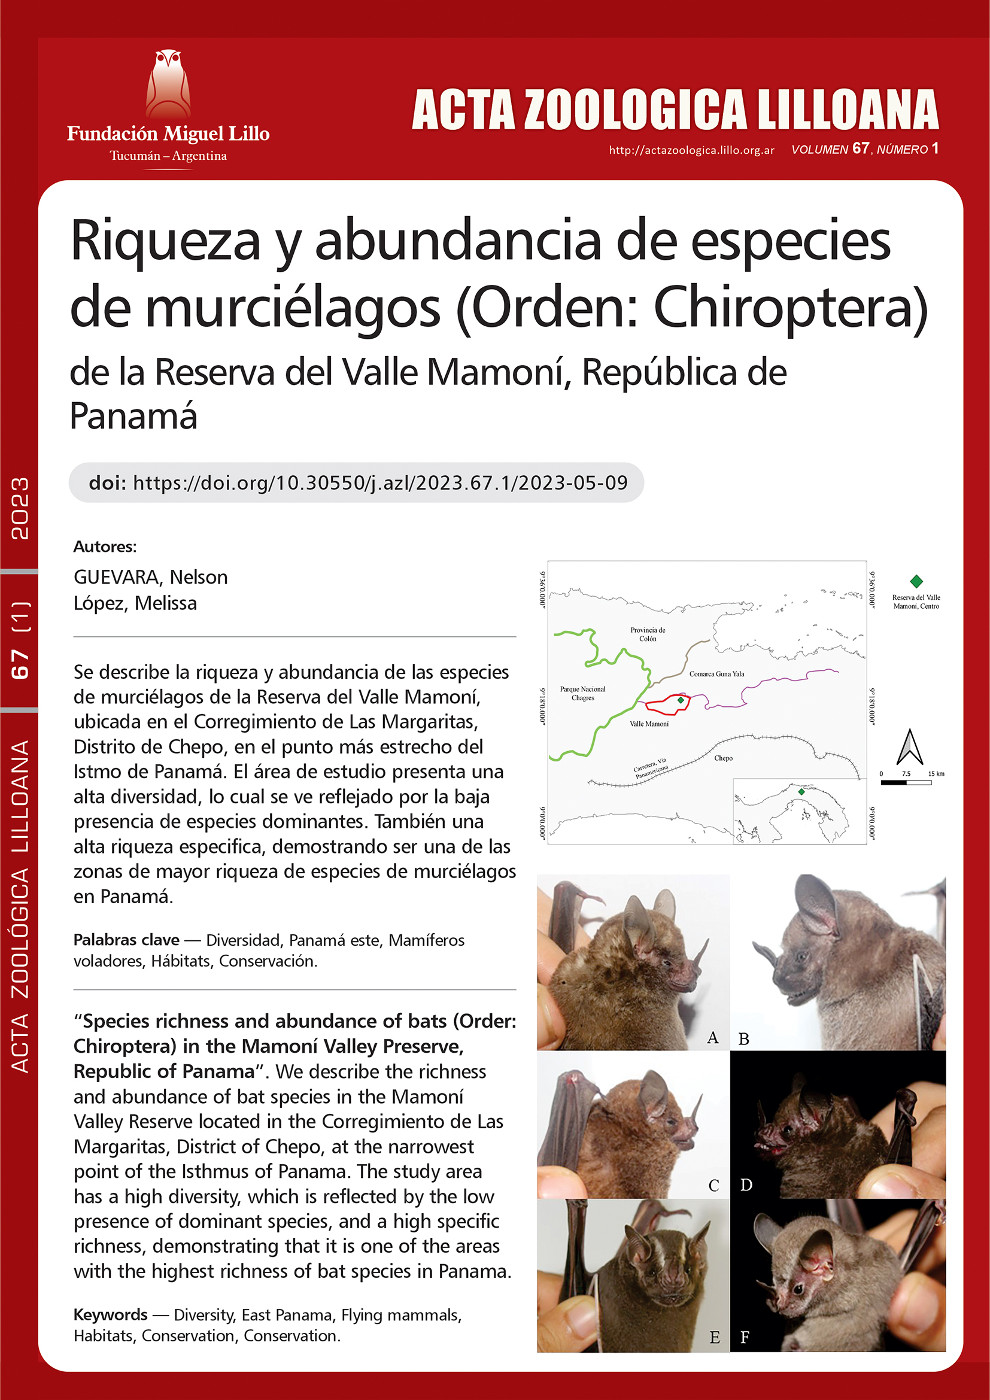 Riqueza y abundancia de especies de murciélagos (Orden: Chiroptera) de la Reserva del Valle Mamoní, República de Panamá